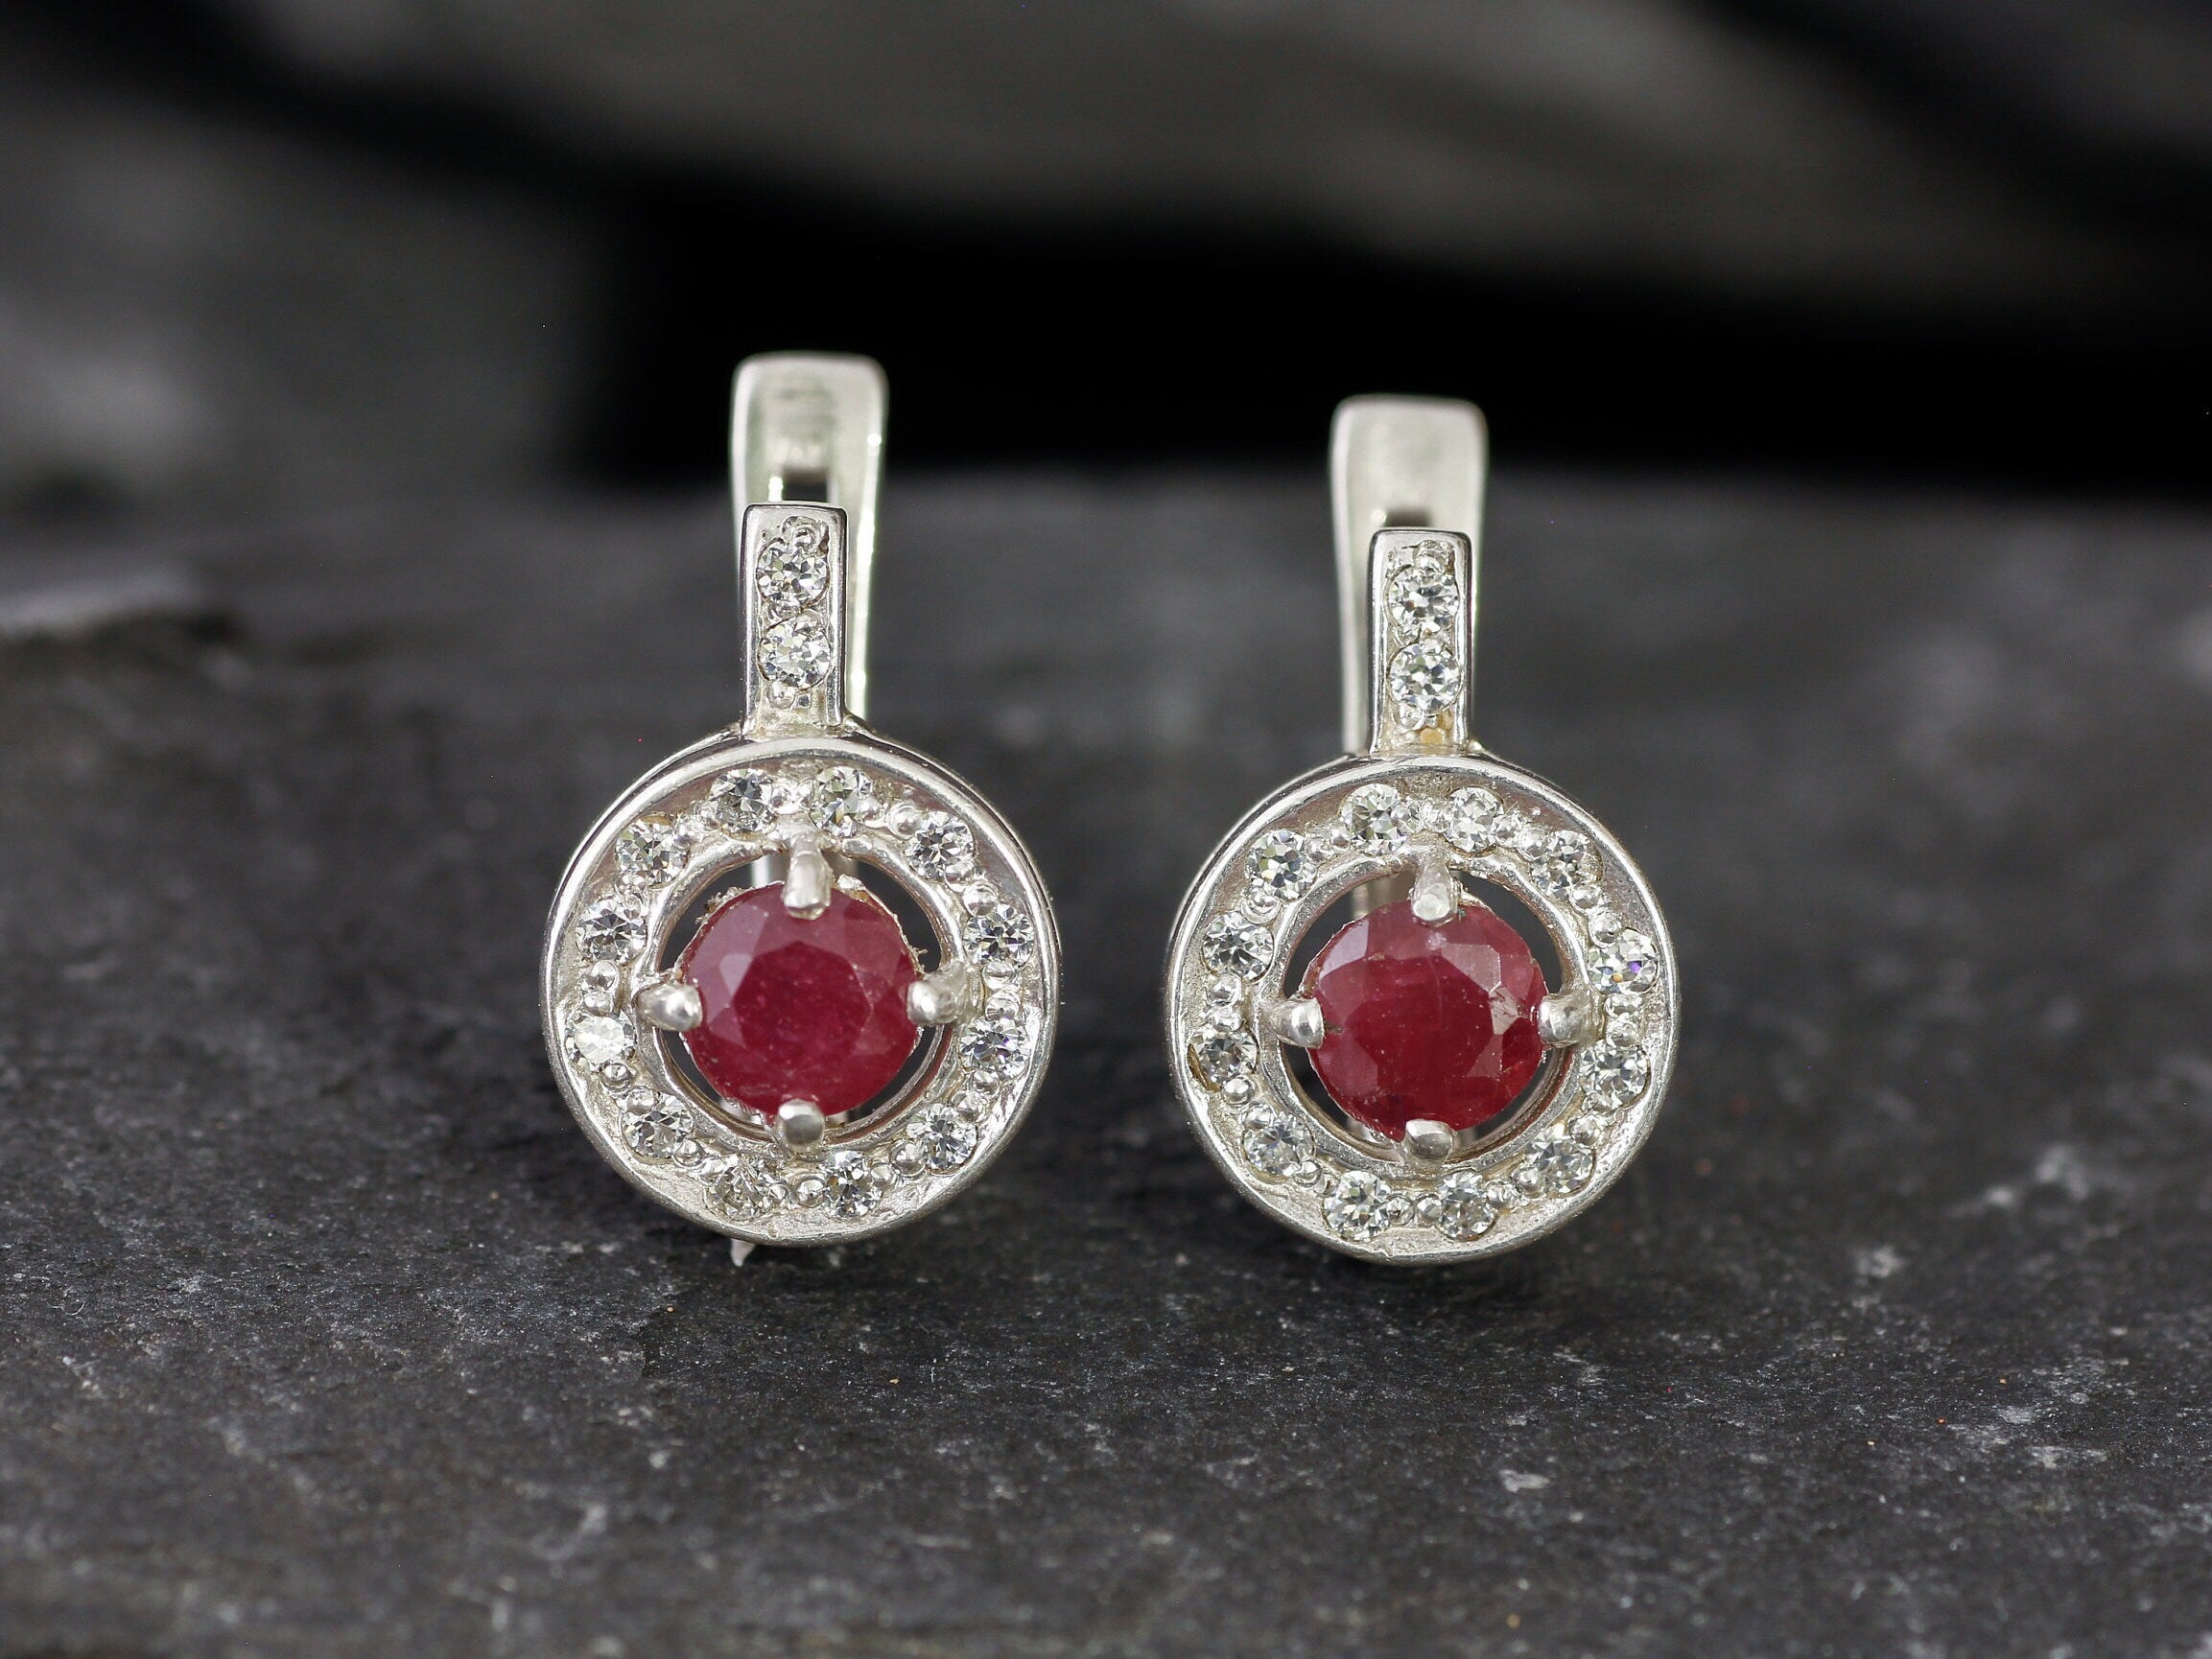 Real Ruby Earrings - Red Cluster Earrings, July Birthstone Earrings